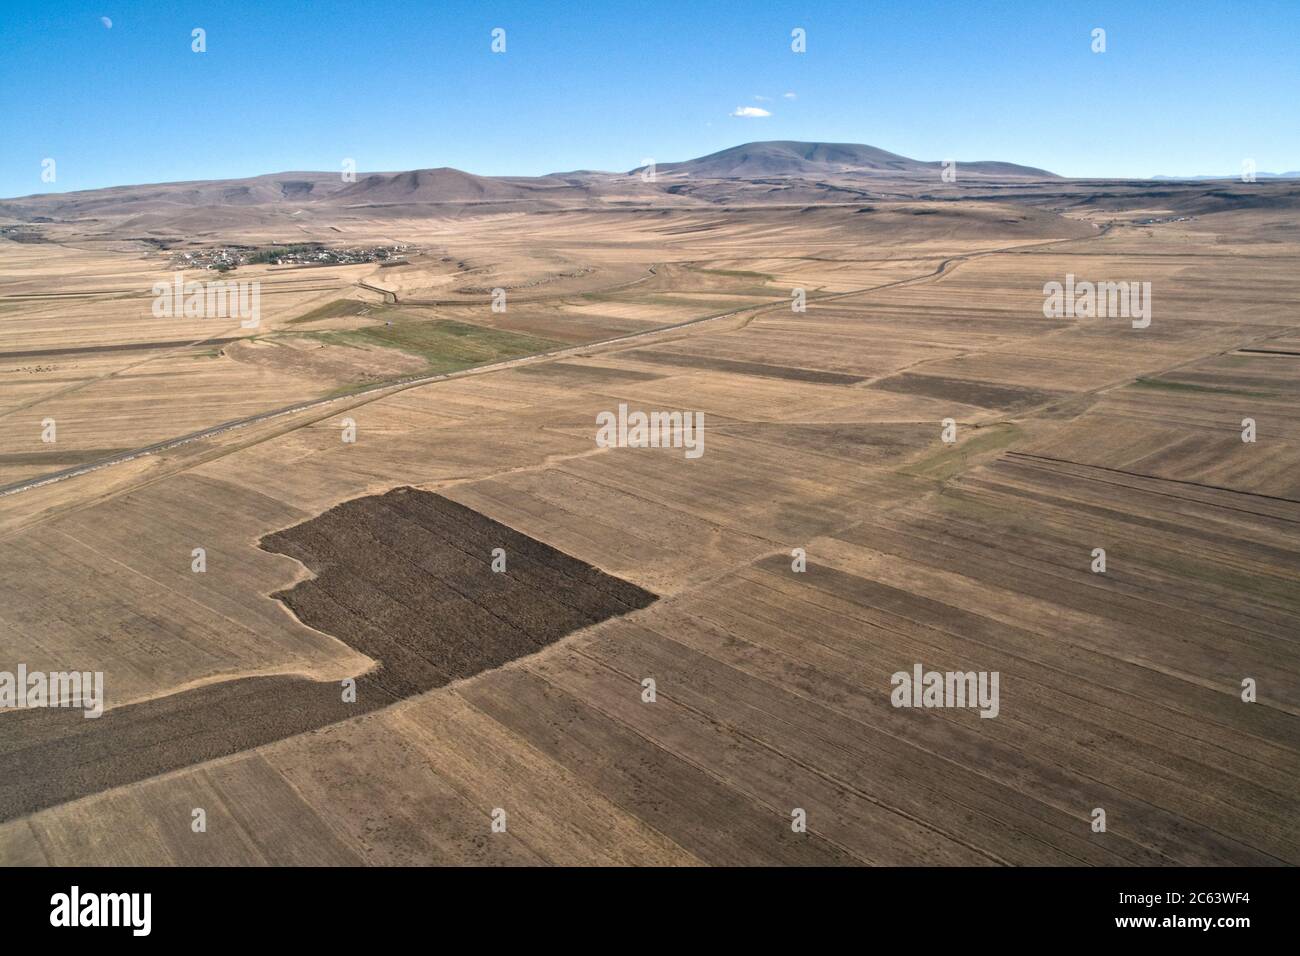 Vue aérienne des terres agricoles sur les steppes turques près de la ville de Kars et de la frontière arménienne dans la région orientale de l'Anatolie, dans le nord-est de la Turquie. Banque D'Images